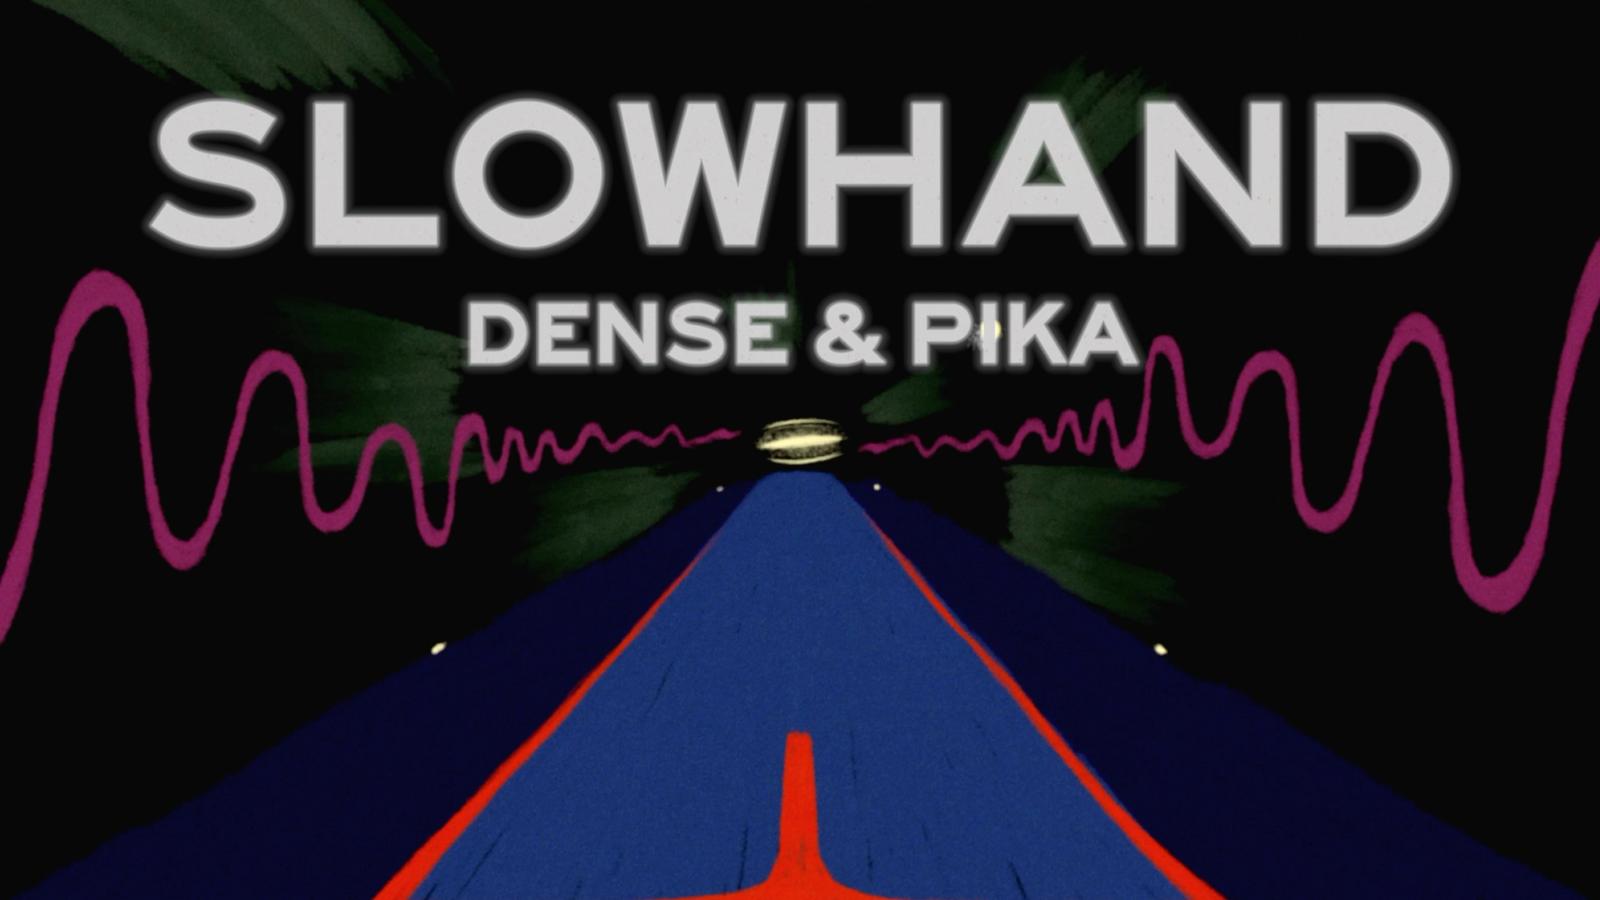 Dense and Pika - Slowhand